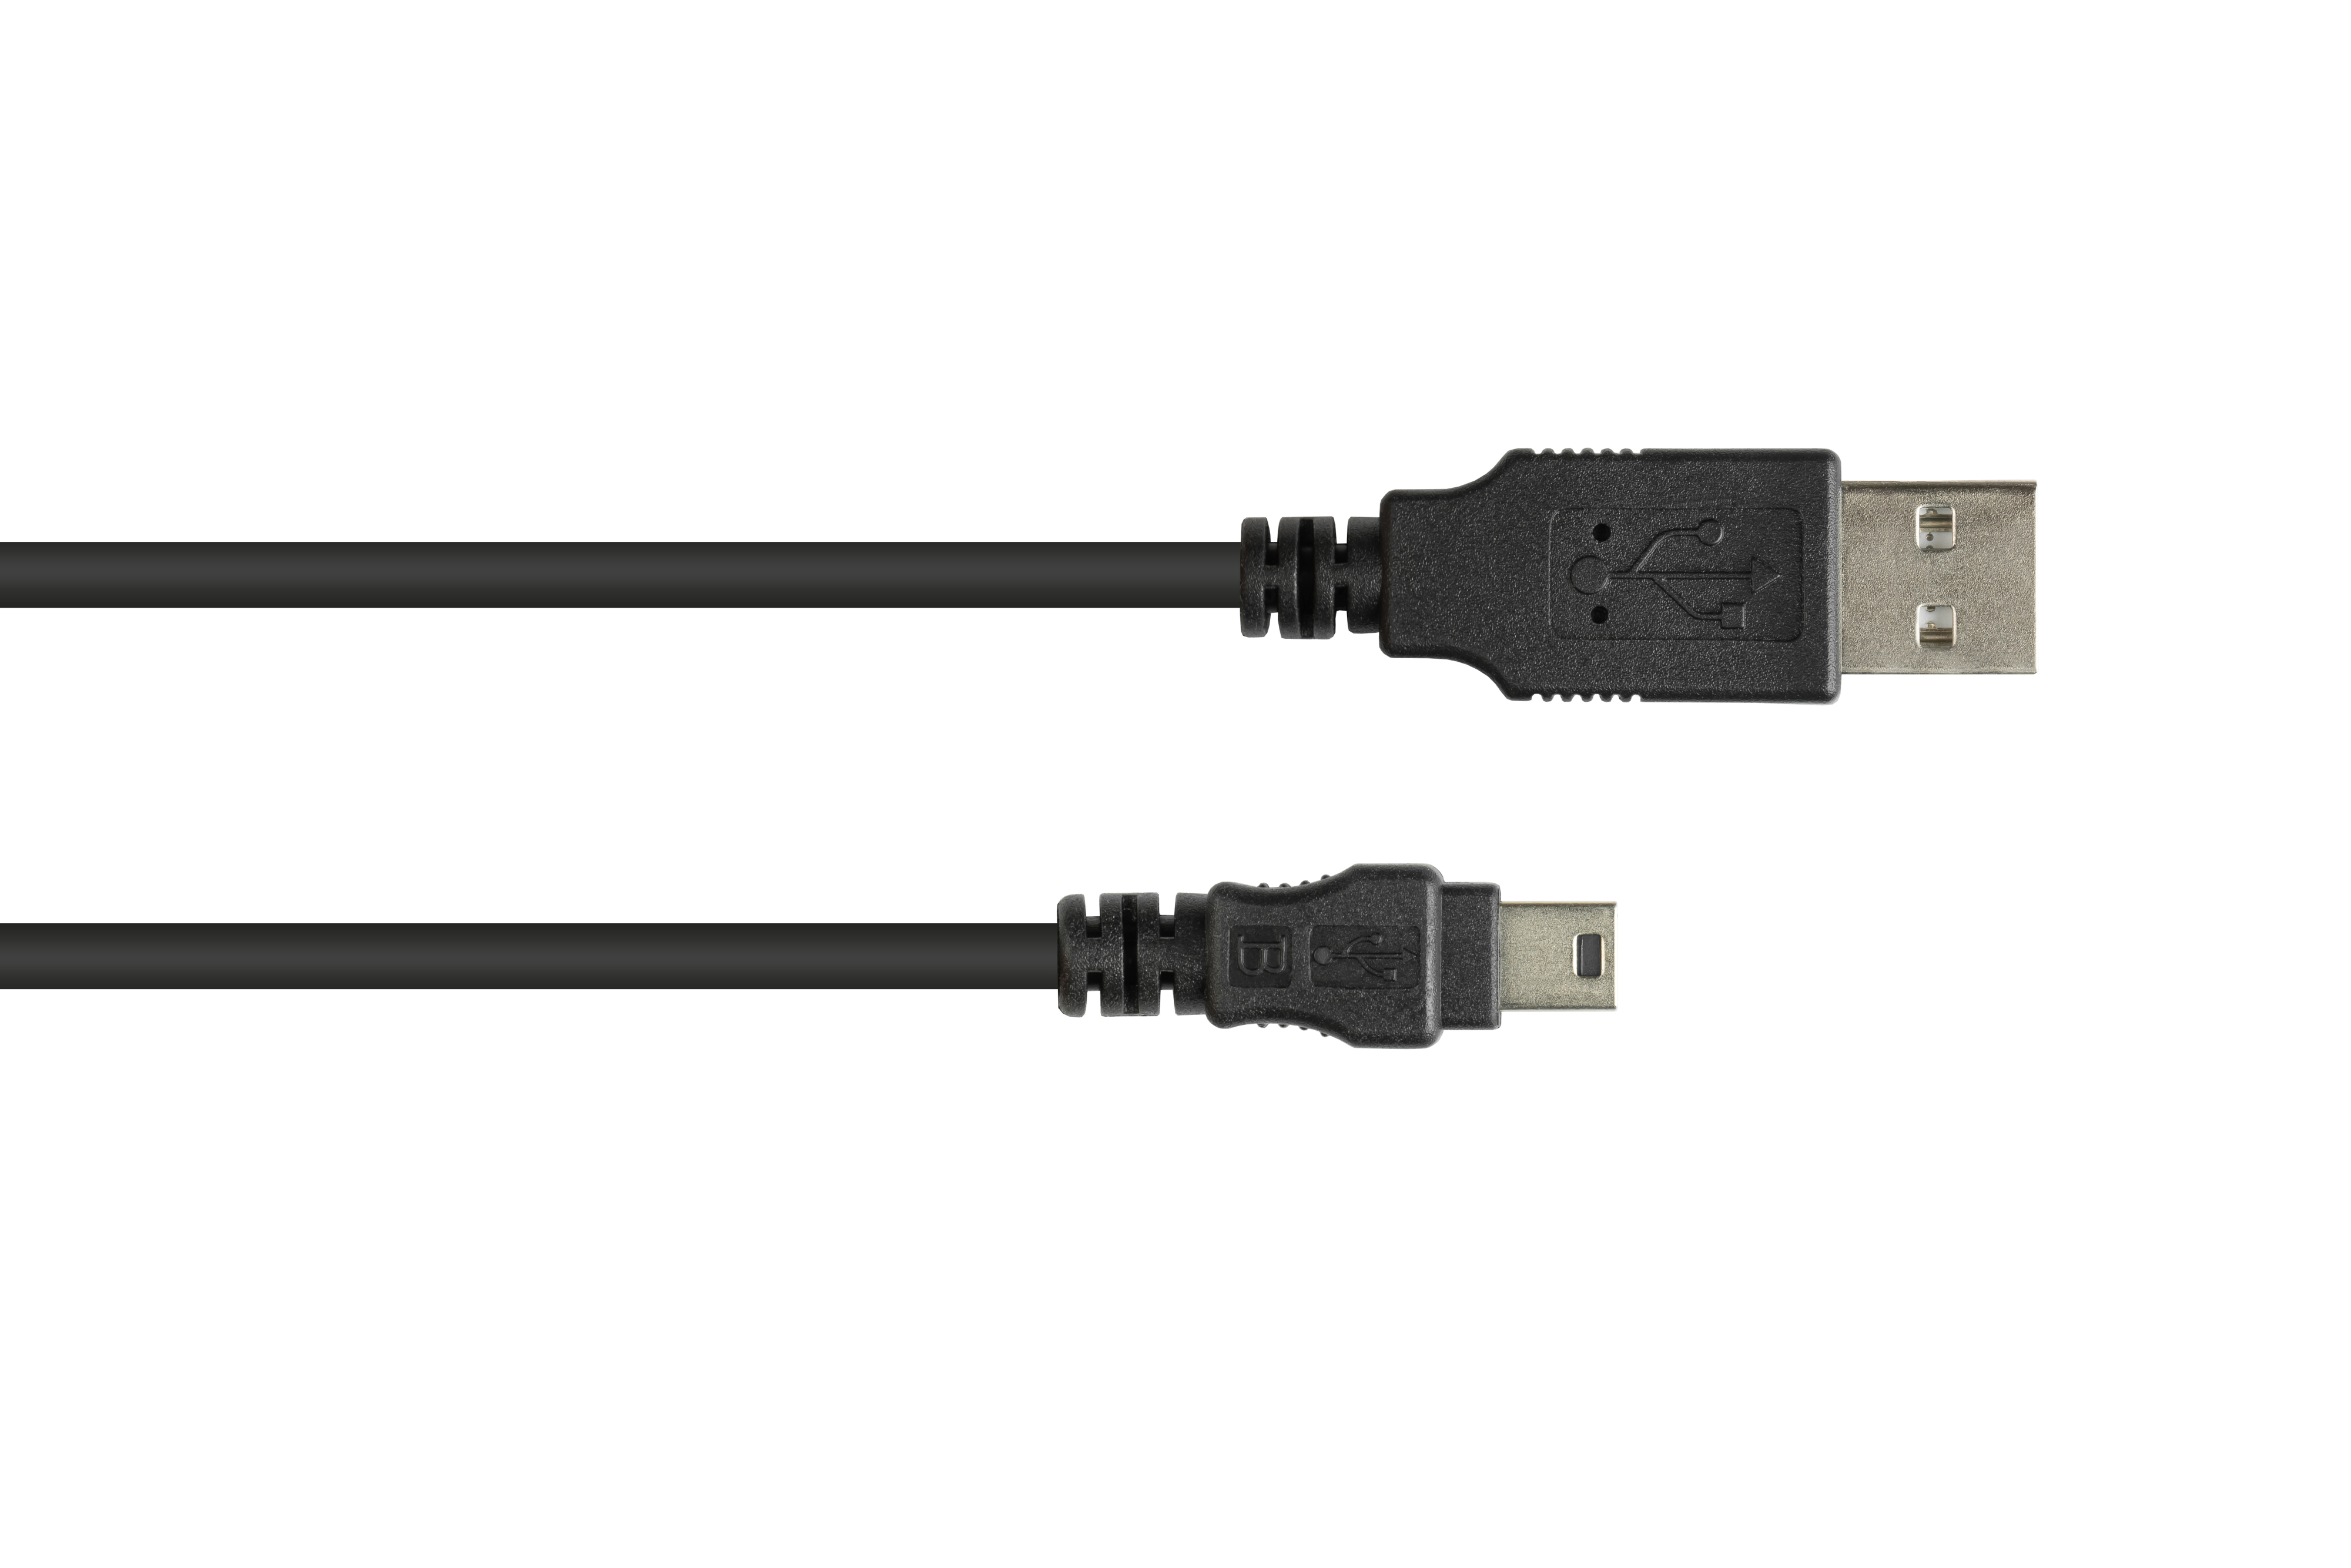 5-pin, B Stecker USB A Mini CONNECTIONS an Stecker Anschlusskabel 2.0 GOOD schwarz